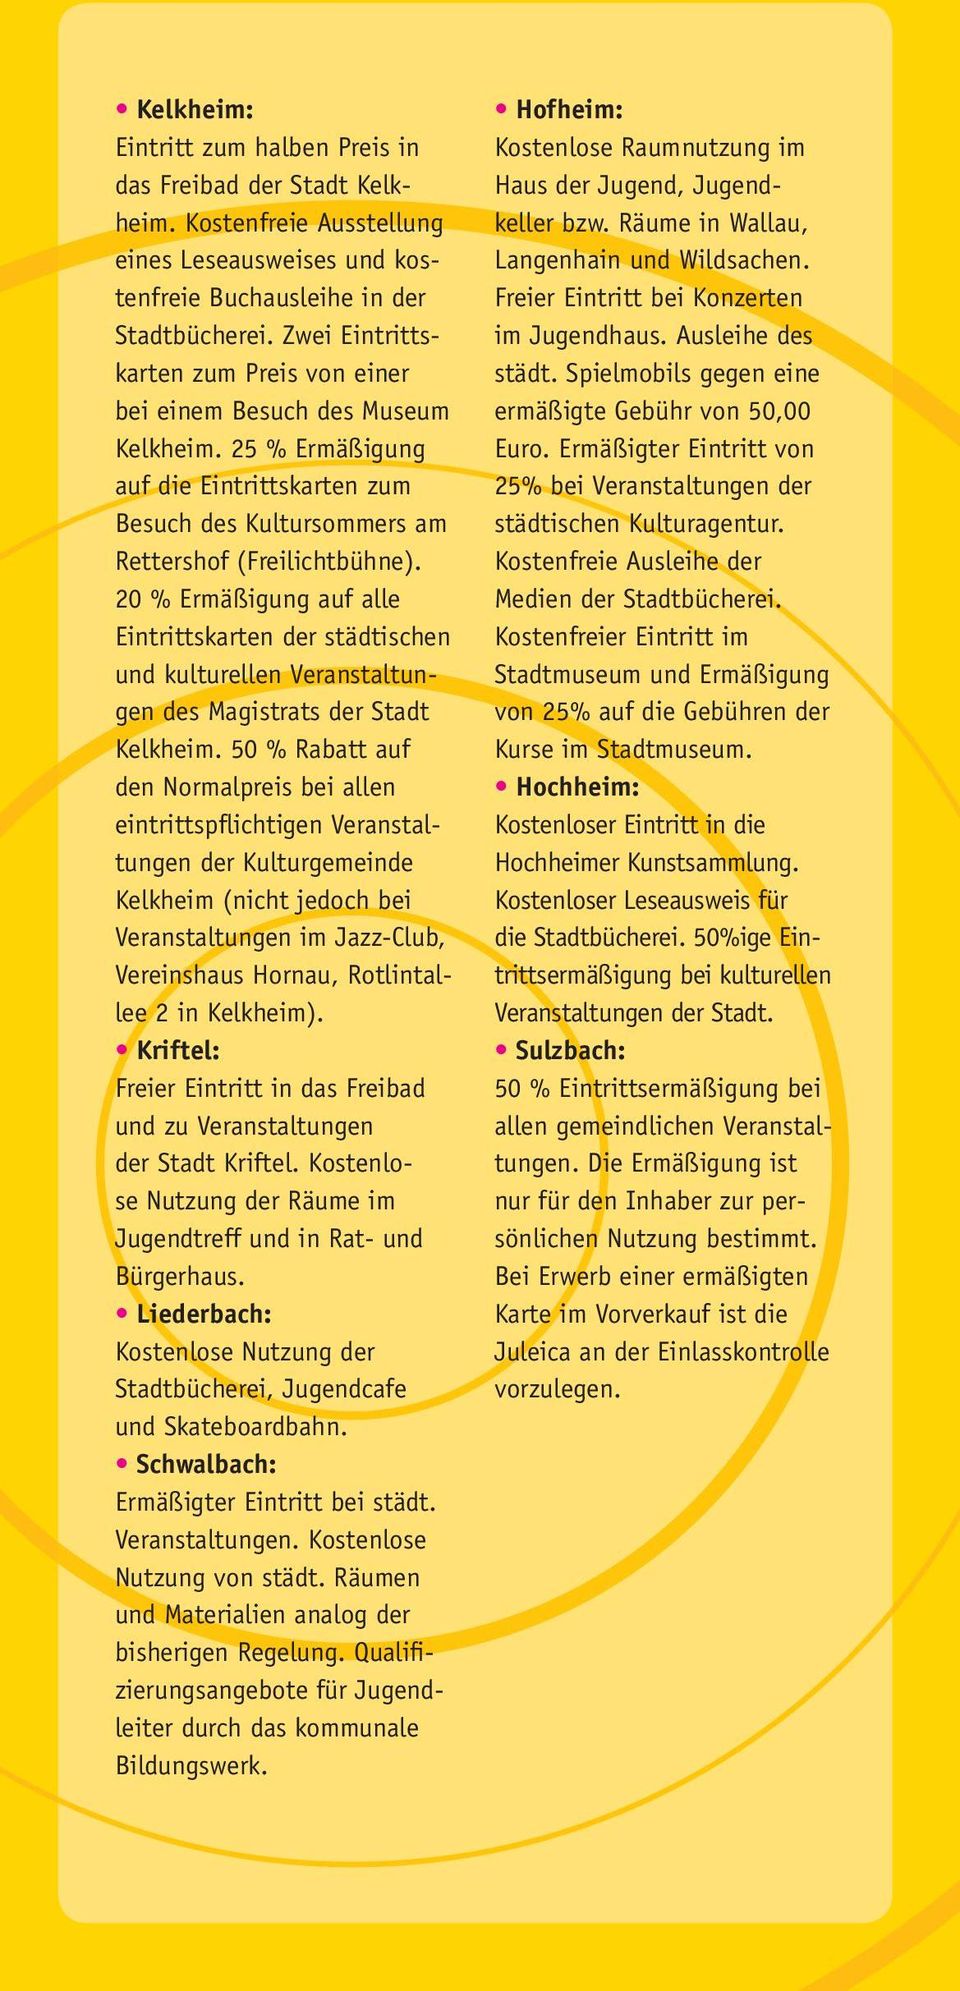 20 % Ermäßigung auf alle Eintrittskarten der städtischen und kulturellen Veranstaltungen des Magistrats der Stadt Kelkheim.